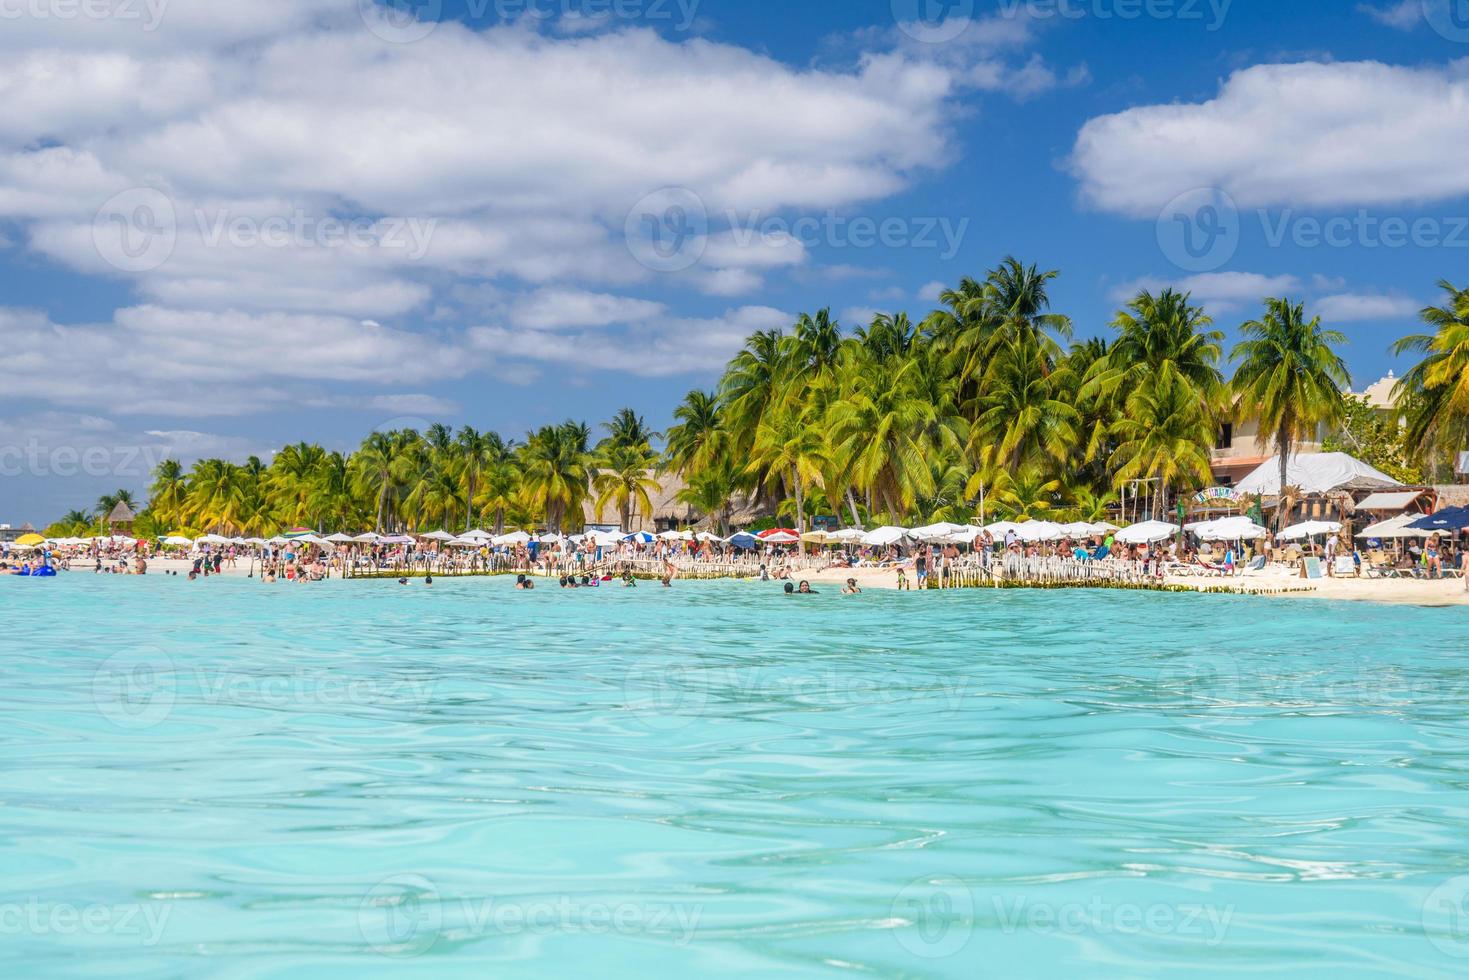 persone che nuotano vicino a una spiaggia di sabbia bianca con ombrelloni, bungalow bar e palme da cocco, mare caraibico turchese, isola di isla mujeres, mare caraibico, cancun, yucatan, messico foto